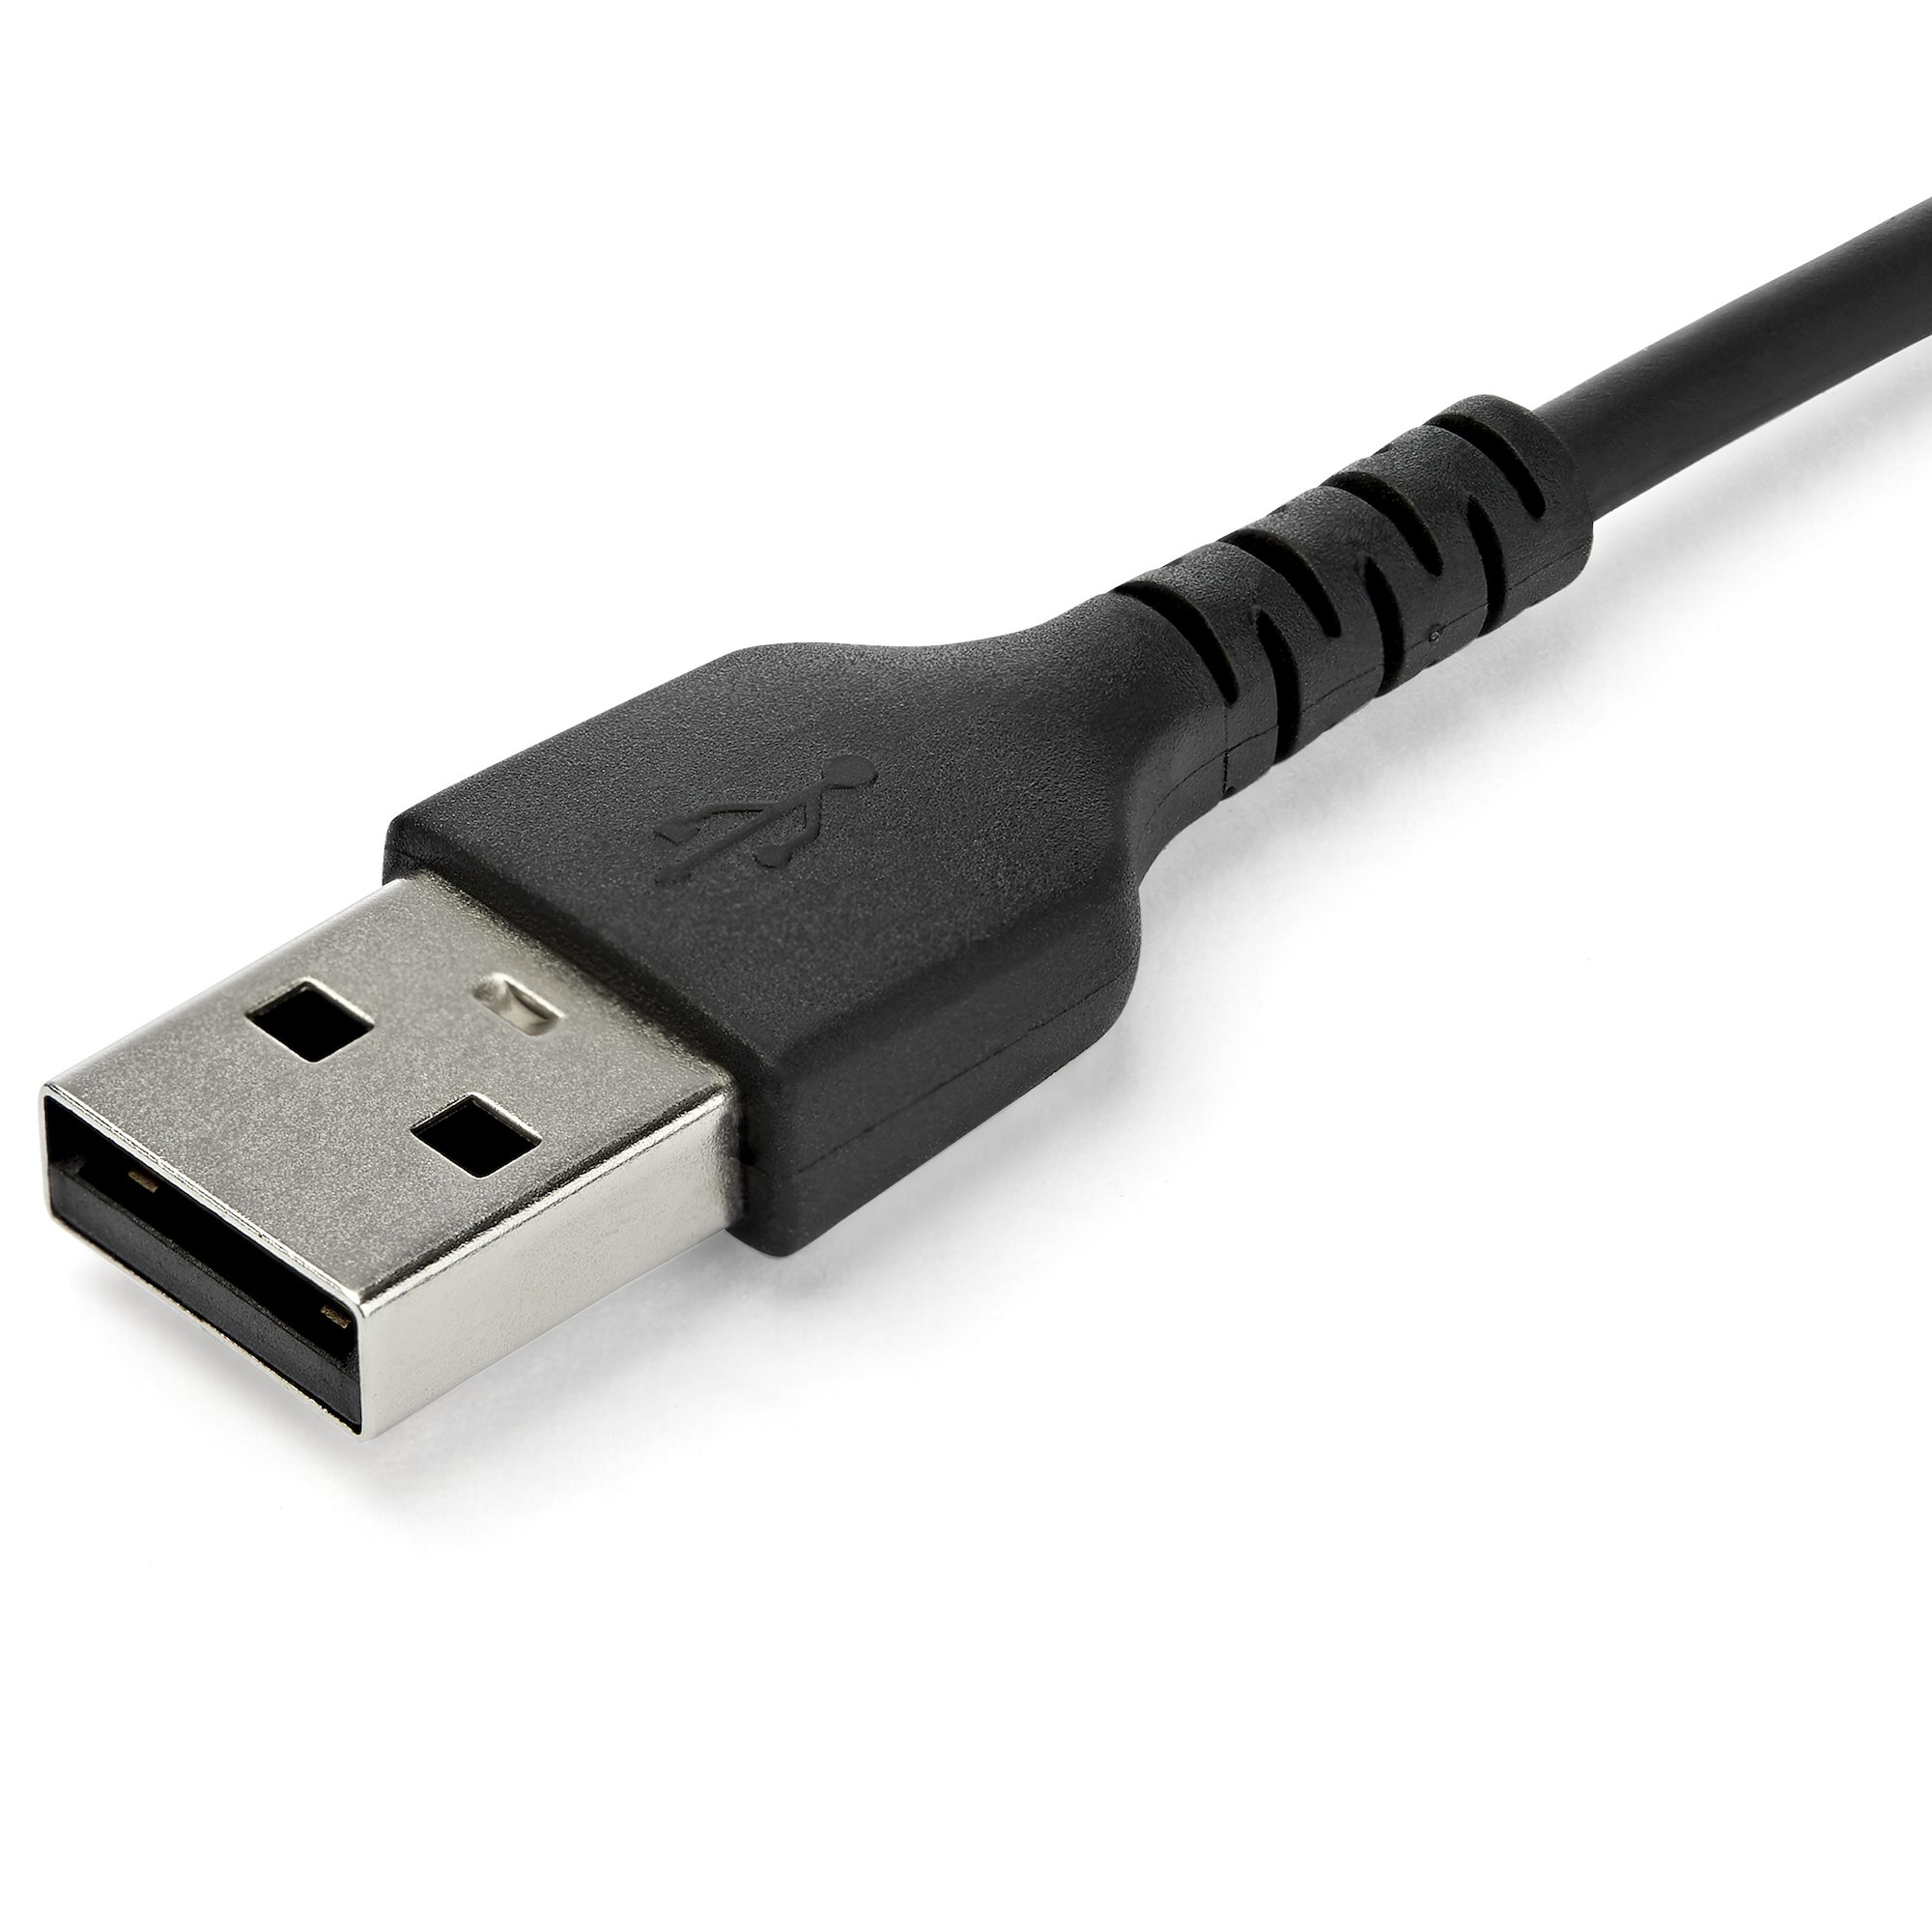 Cable de datos USB 2.0 - Type-C